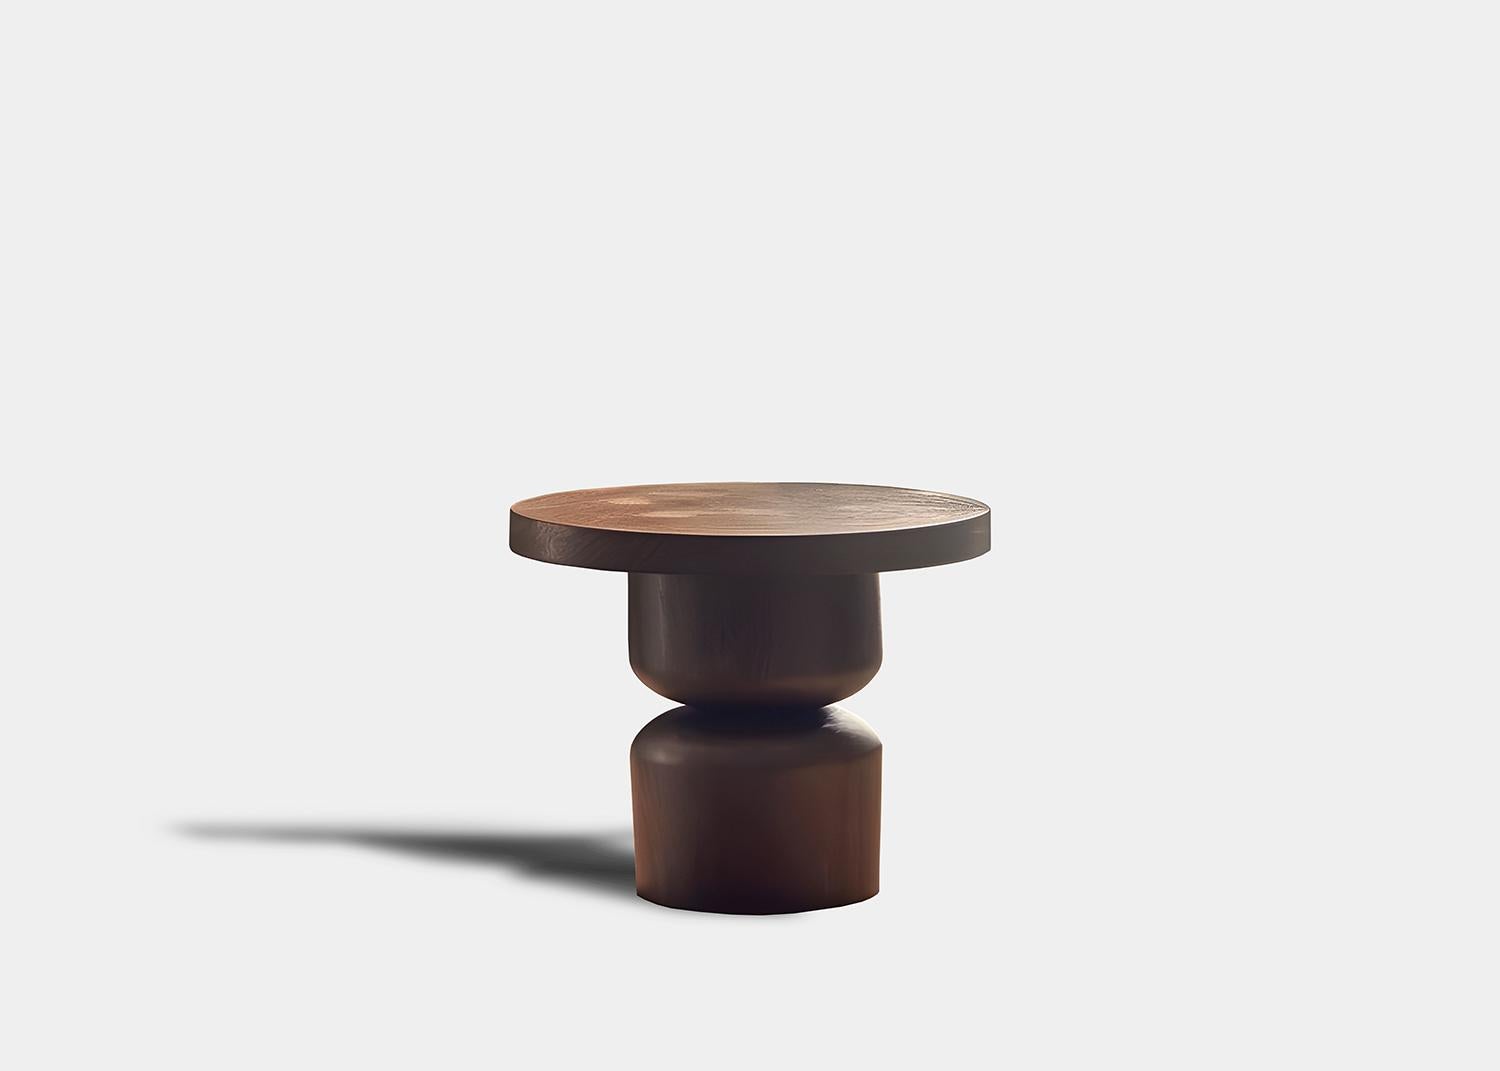 Socle table d'appoint, table auxiliaire, table de nuit

Socle est une petite table en bois massif conçue par l'équipe de design de NONO. Réalisée en bois massif, sa construction élaborée sert de support, à l'instar d'un socle pour une statue ou une